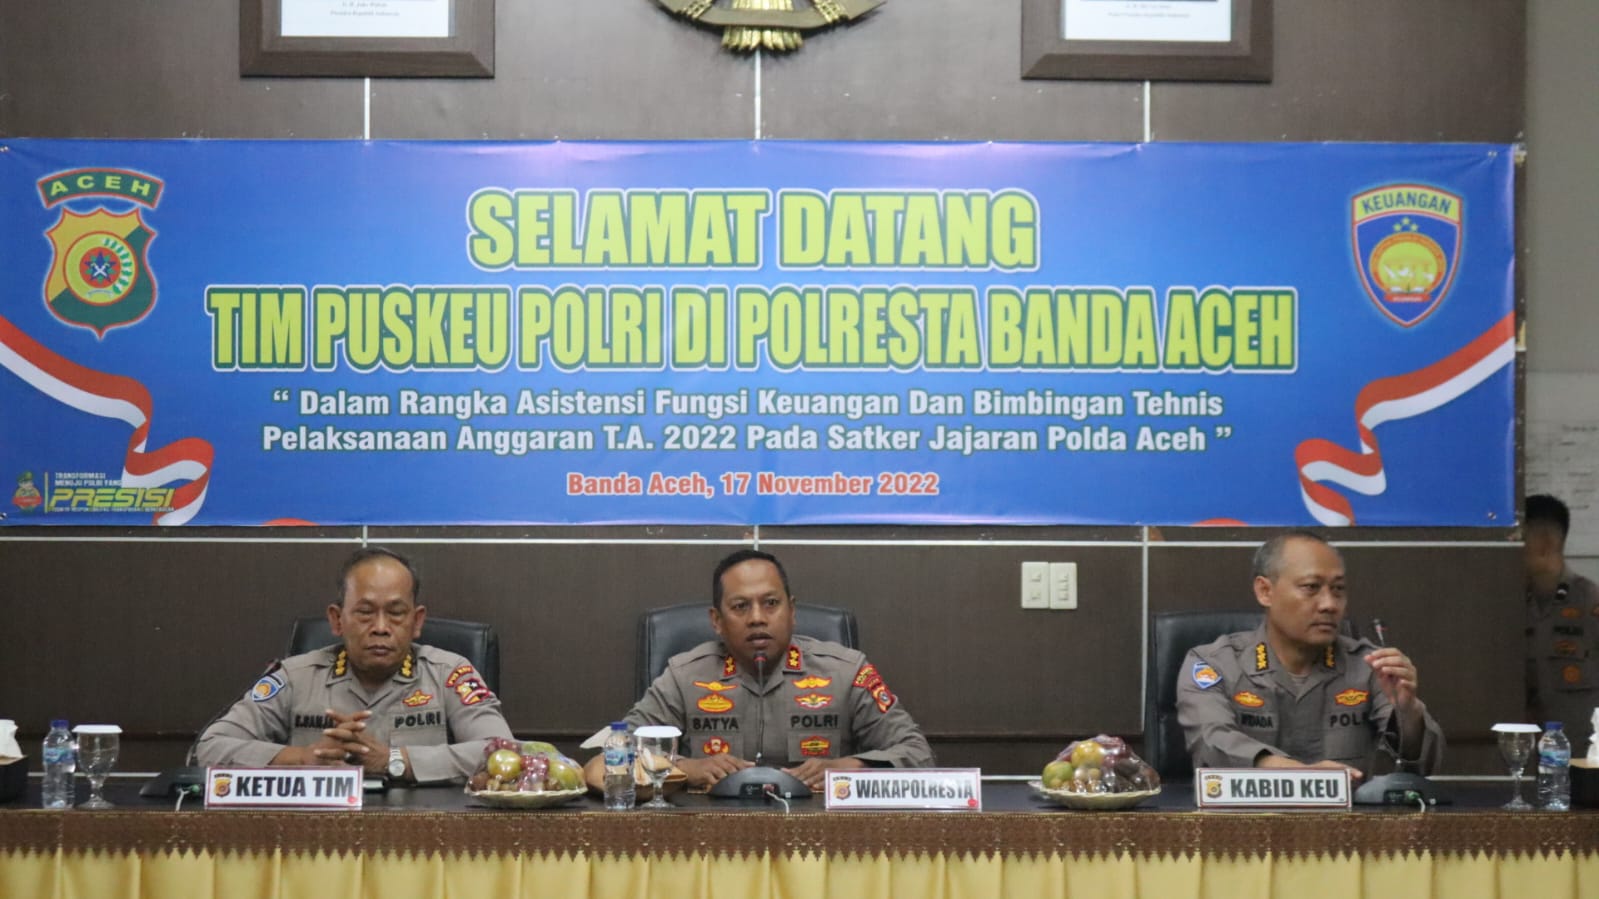 Puskeu Polri Gelar Kegiatan Asistensi Fungsi Keuangan dan Bimbingan Tekhnis di Polresta Banda Aceh